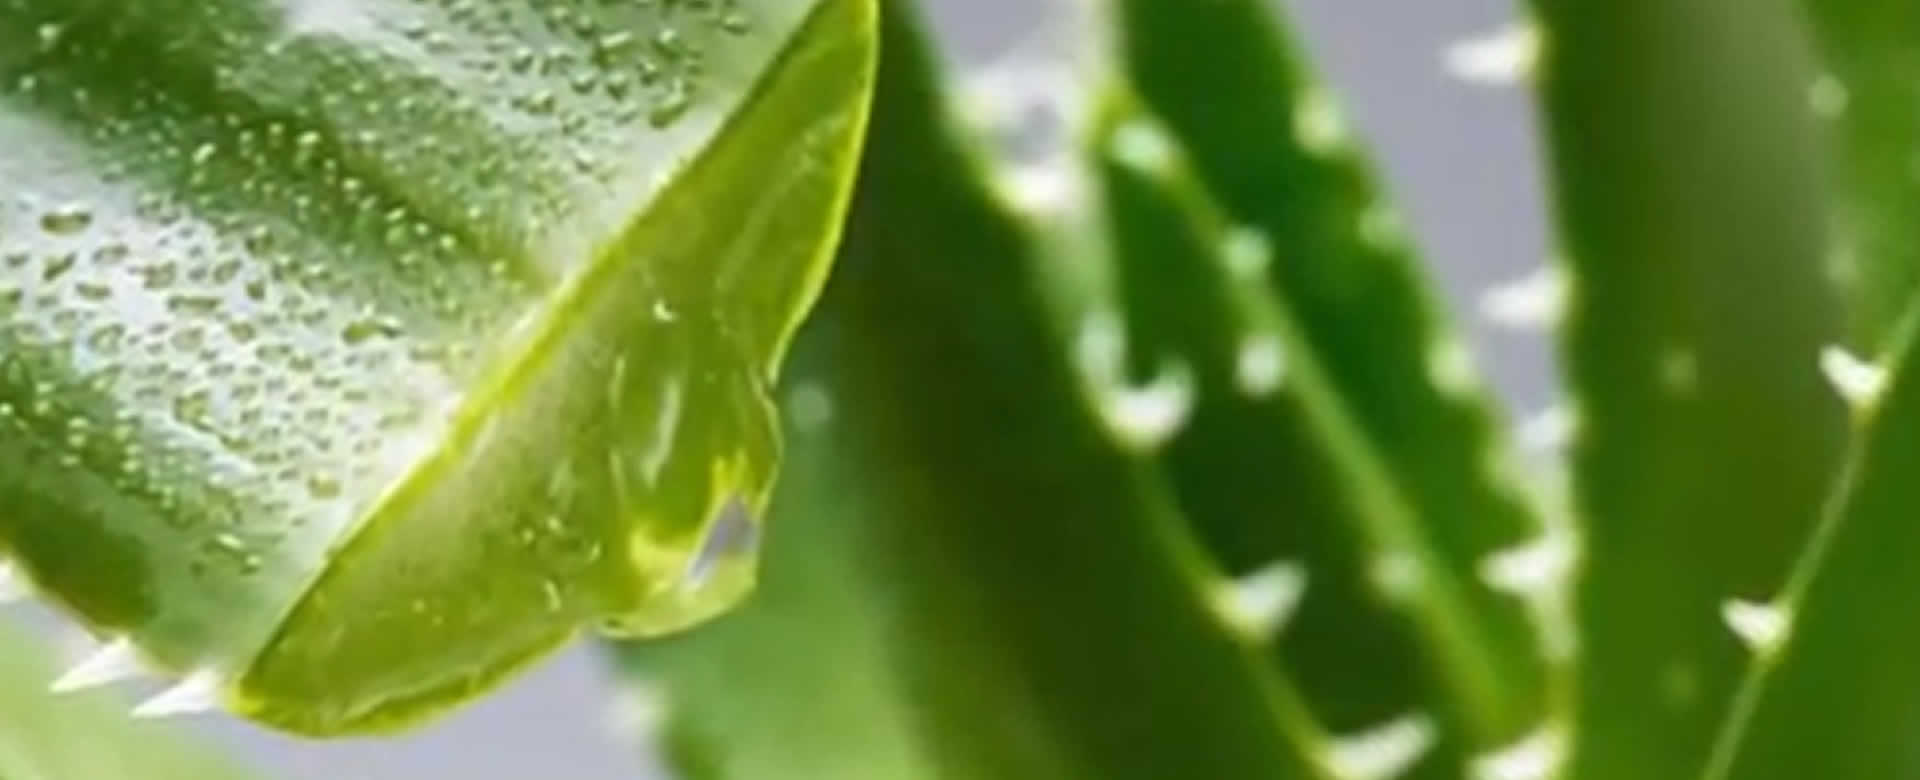 El Aloe Vera O Sábila Una Planta Que Podemos Tener En Nuestras Casas Viva Nicaragua Canal 13 5362